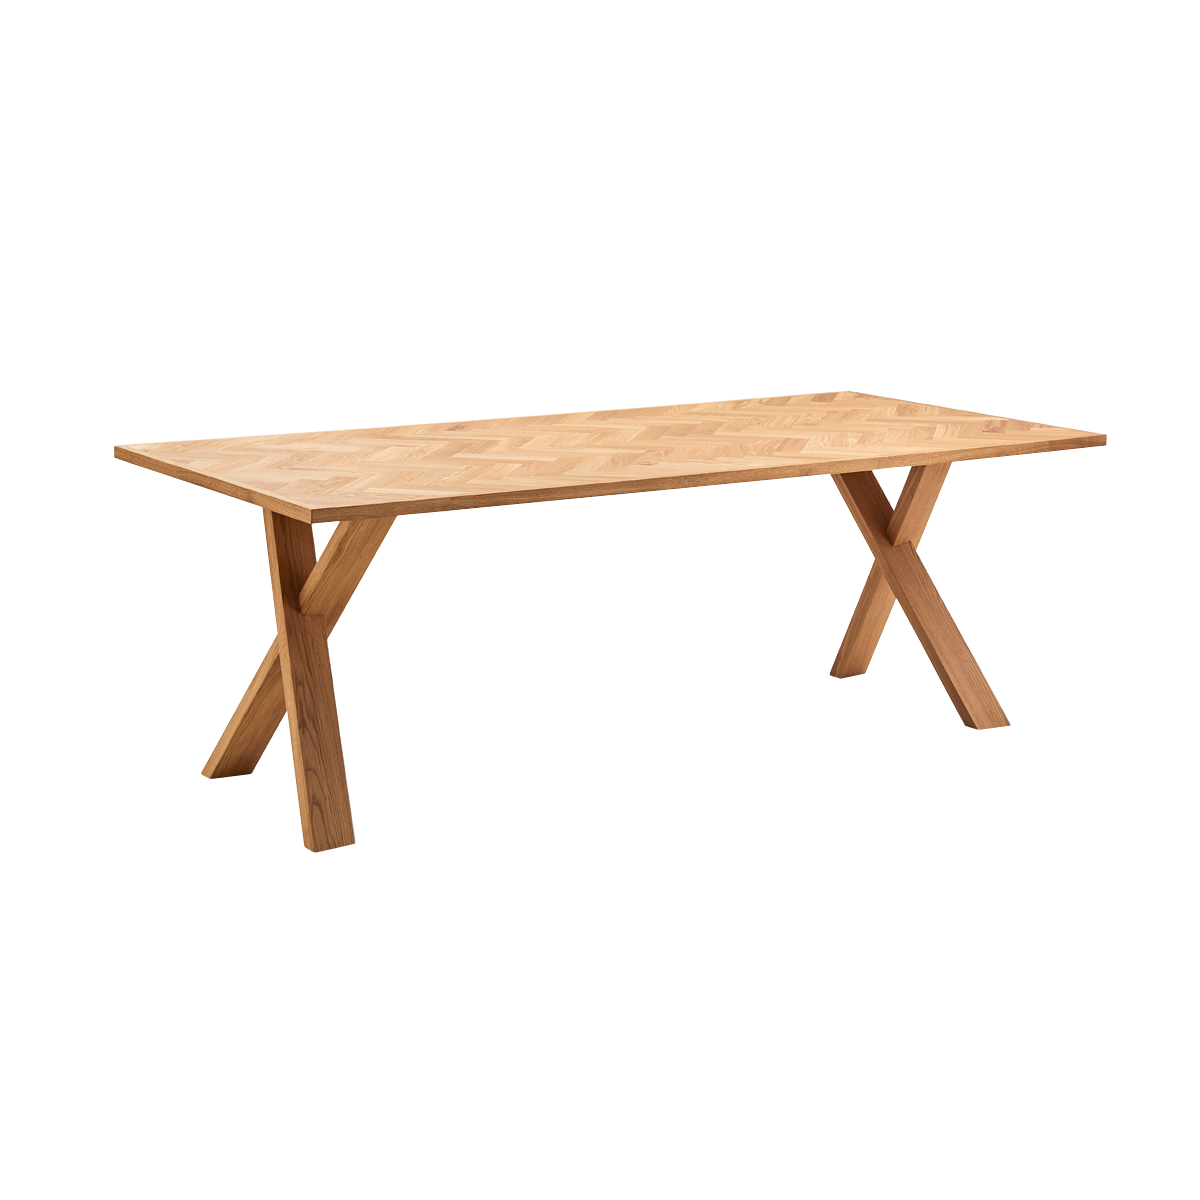 Arki Parquette plankebord med sildebensmønster fra Kristensen & Kristensen i naturolieret egetræ med x-ben eller v-ben